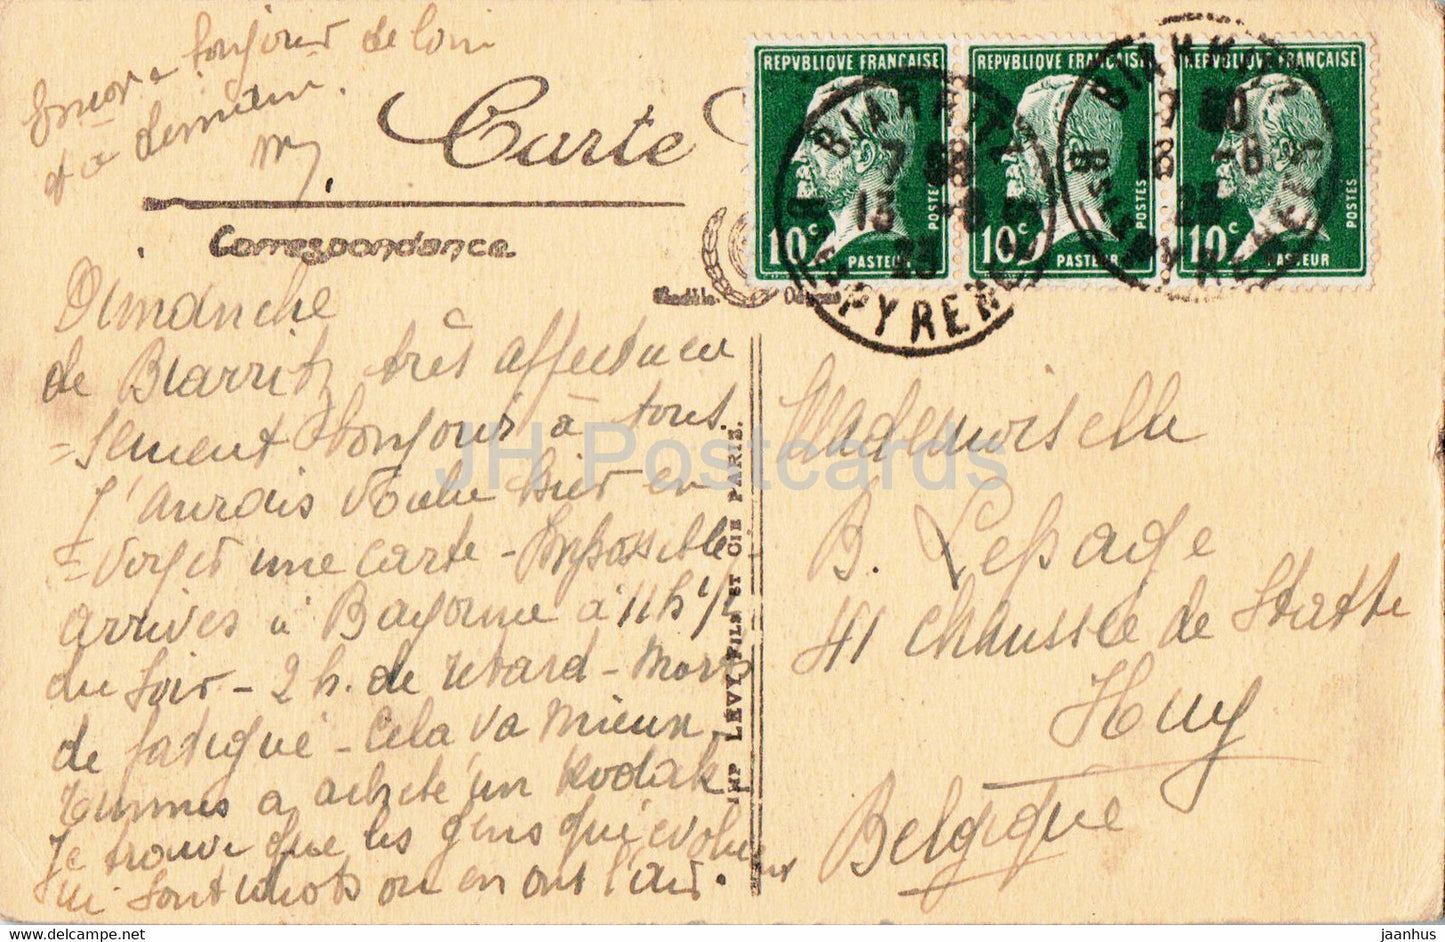 Biarritz - Effet de Vagues au Rocher de la Vierge - 398 - alte Postkarte - 1923 - Frankreich - gebraucht